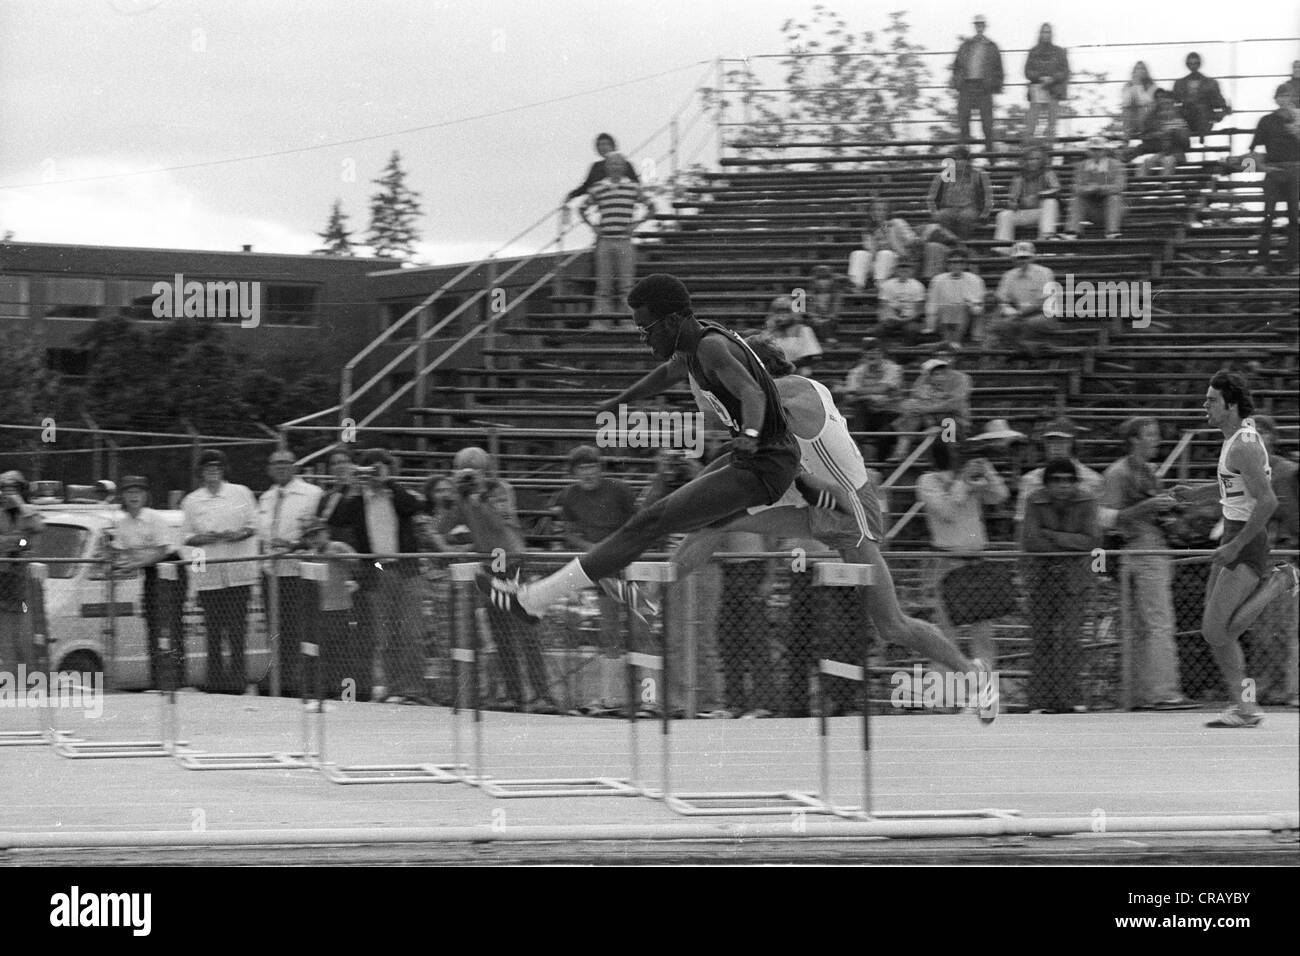 Edwin Moses concurrentes dans le 400 mètres haies aux Jeux Olympiques de 1976 de nous suivre et d'essais sur le terrain. Banque D'Images